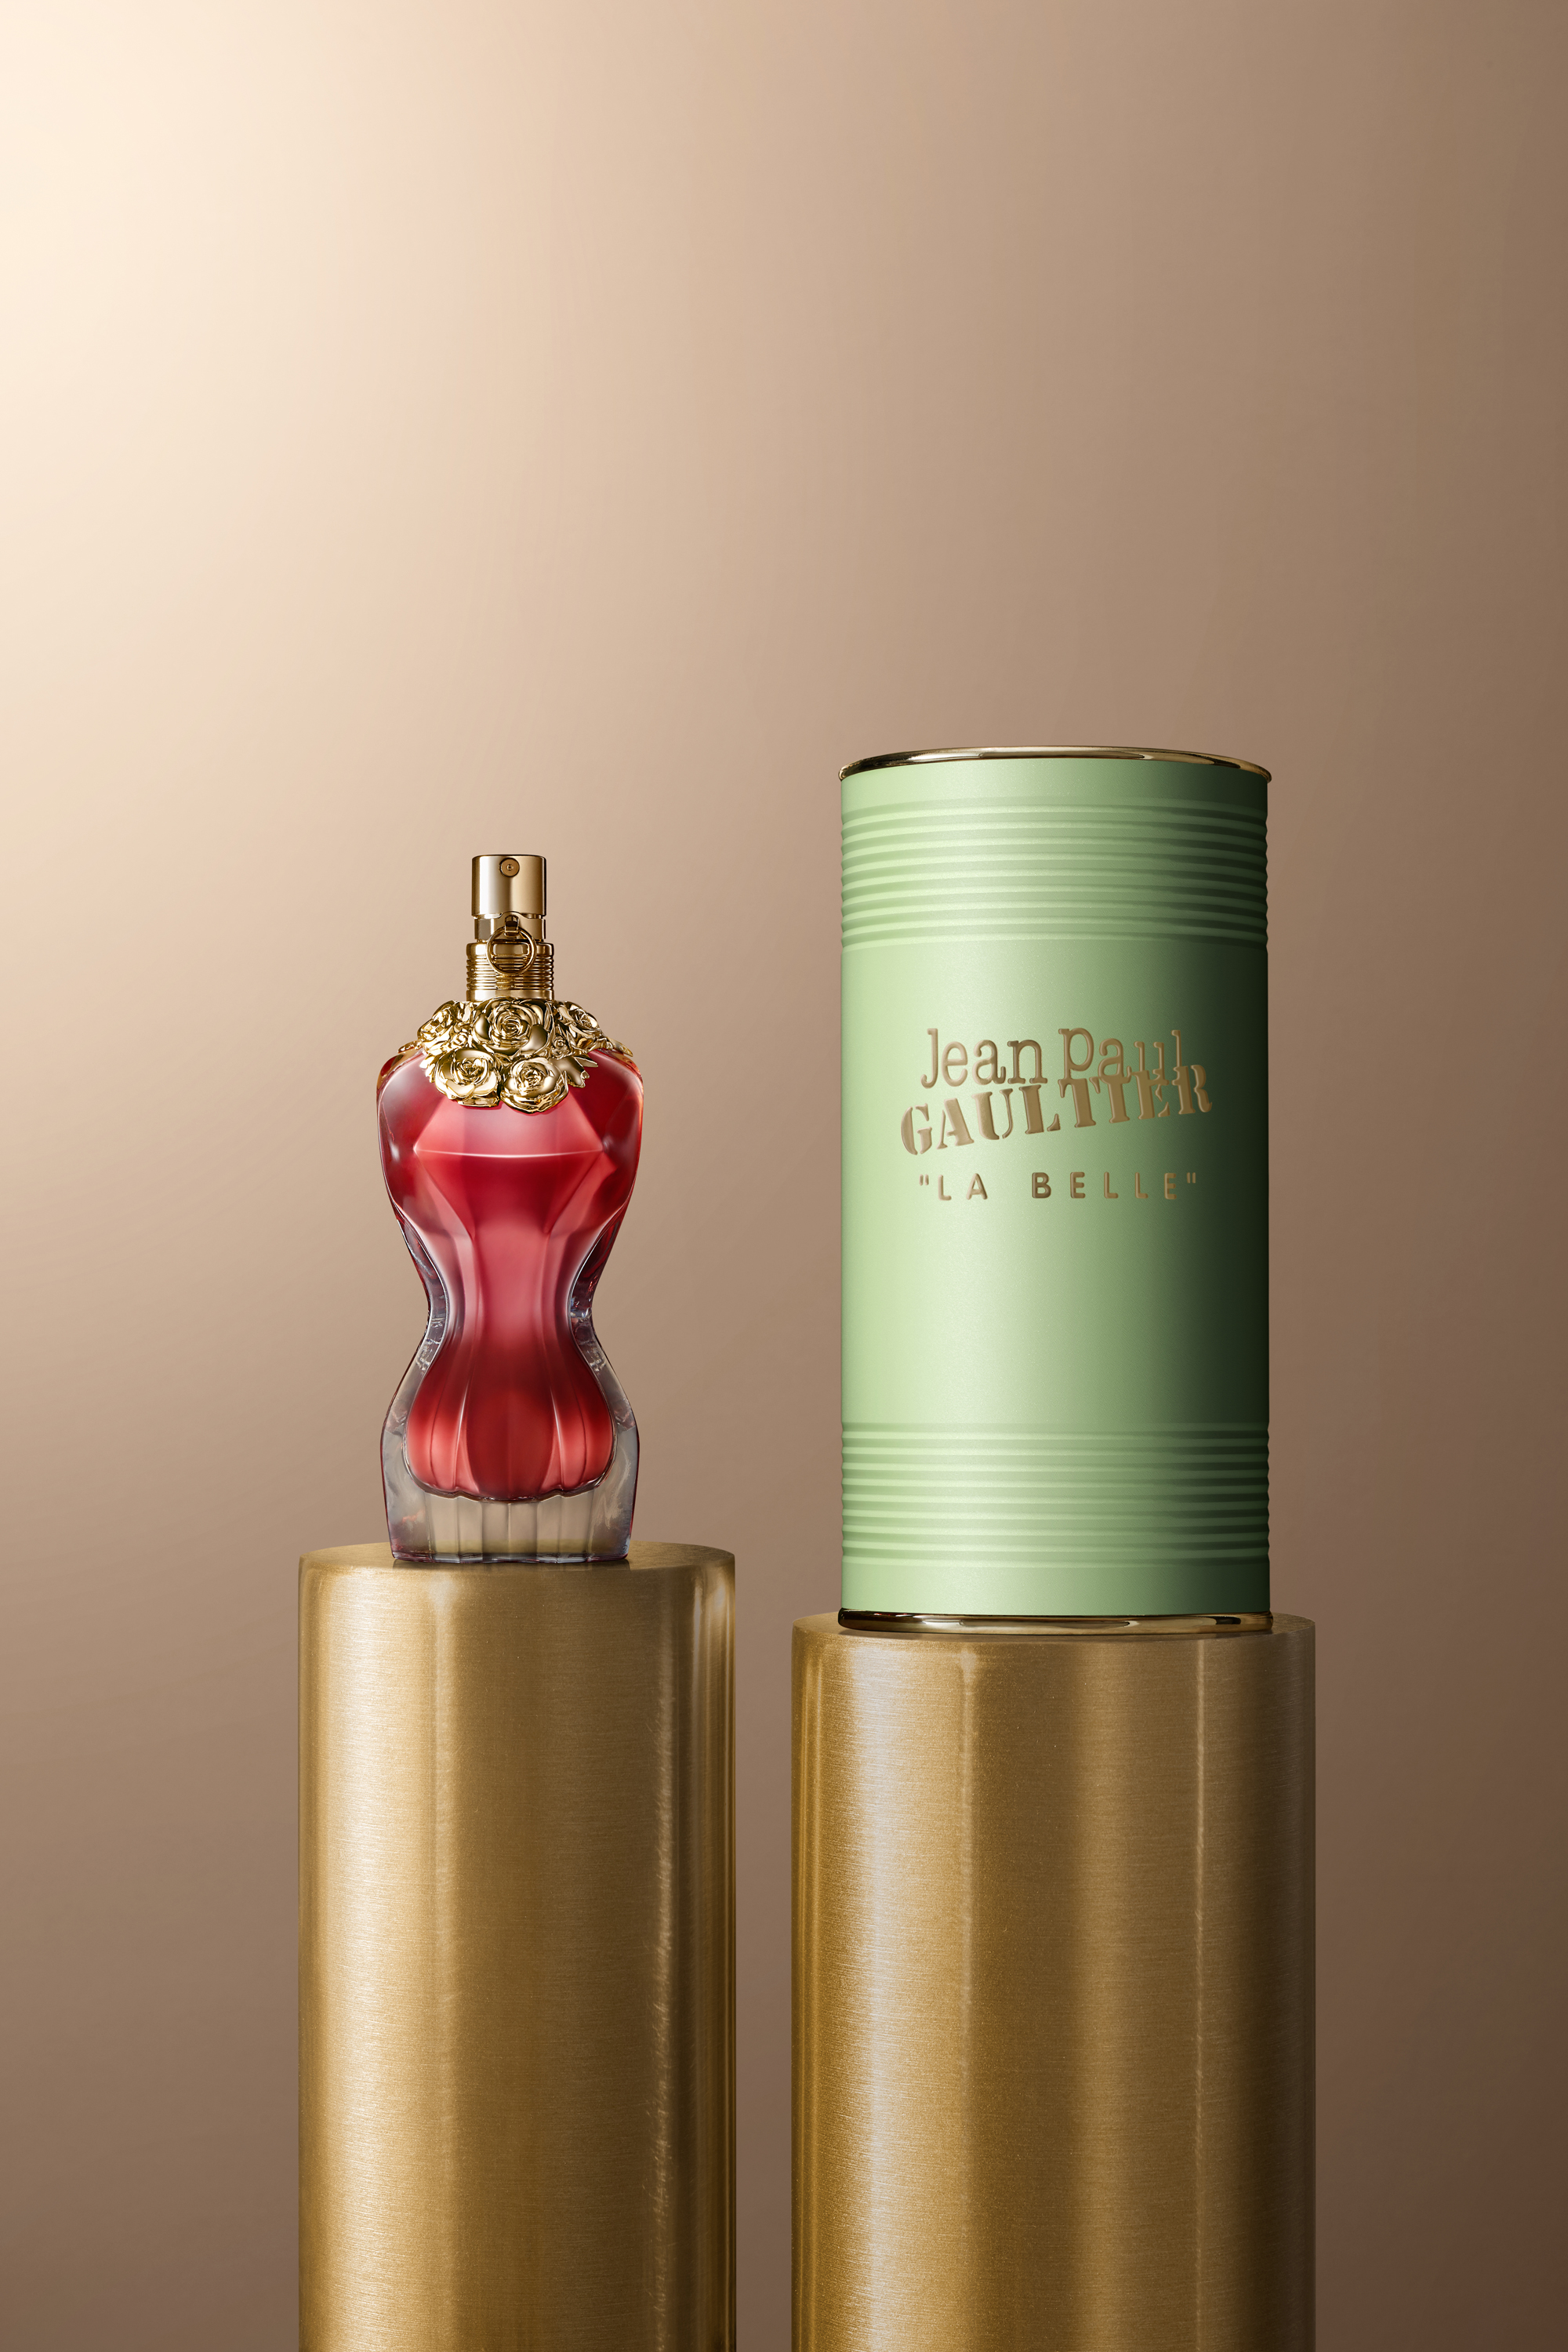 La Belle Jean Paul Gaultier perfume - a new fragrance for women 2019